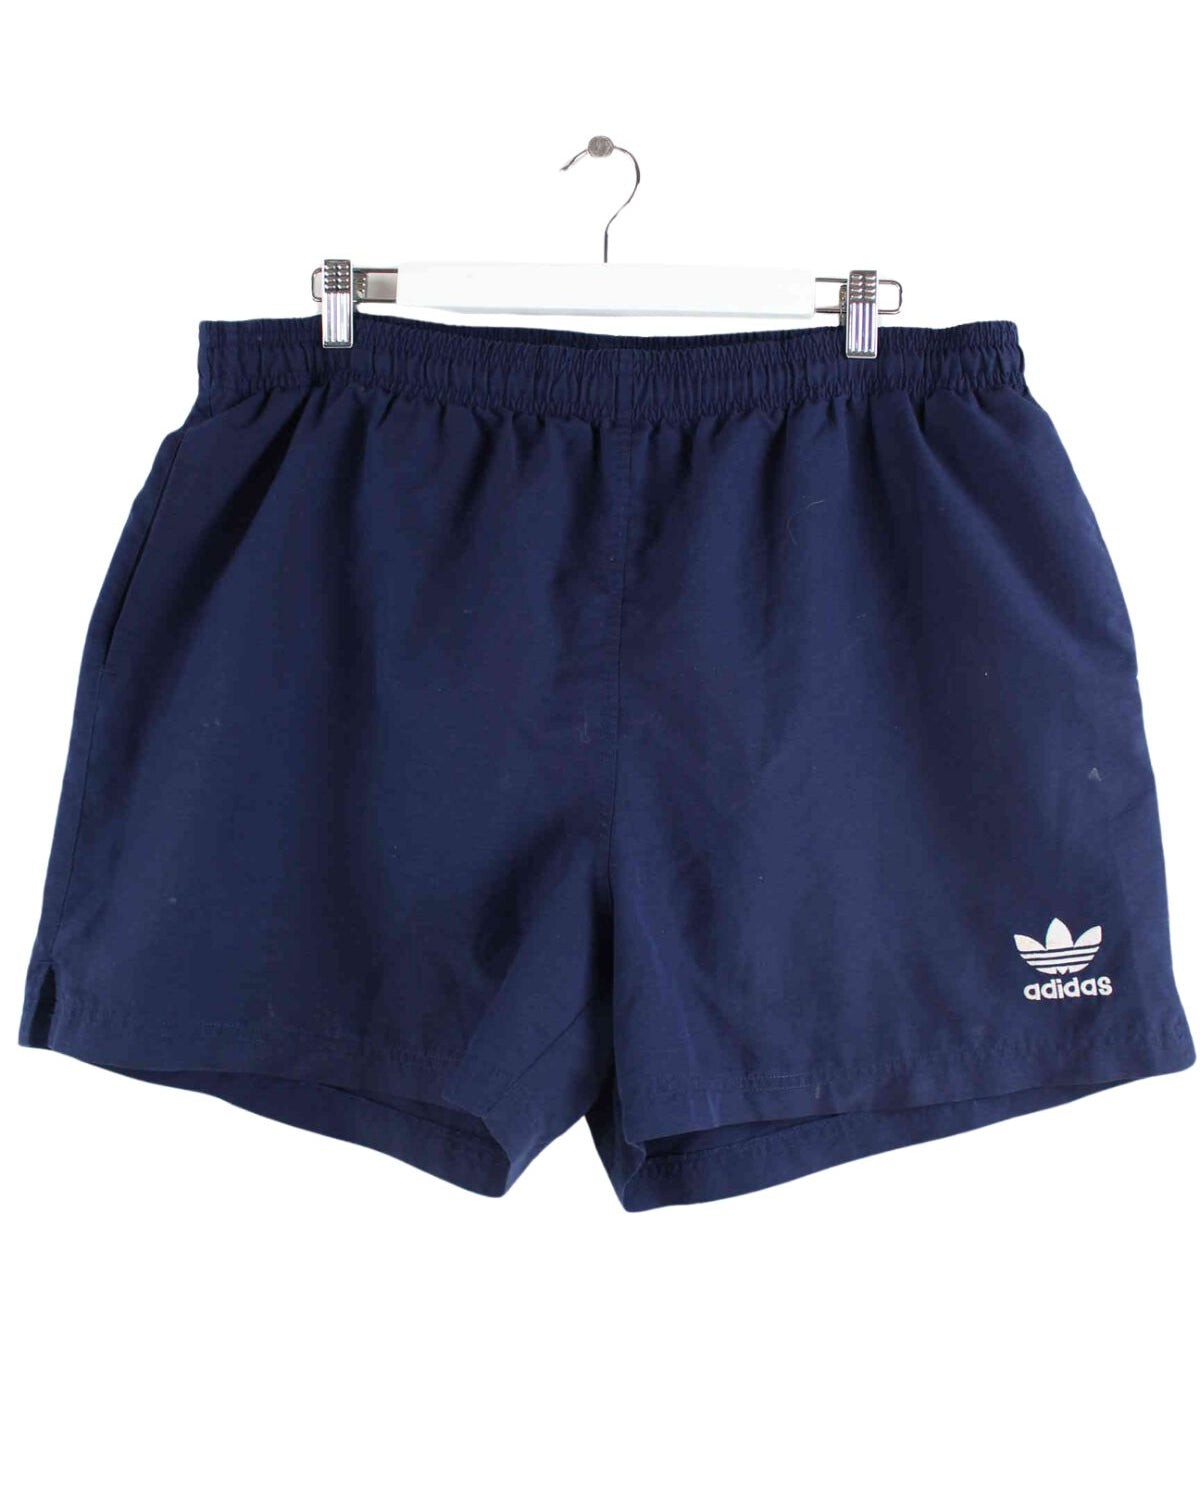 Adidas 90s Vintage Trefoil Shorts Blau L (front image)